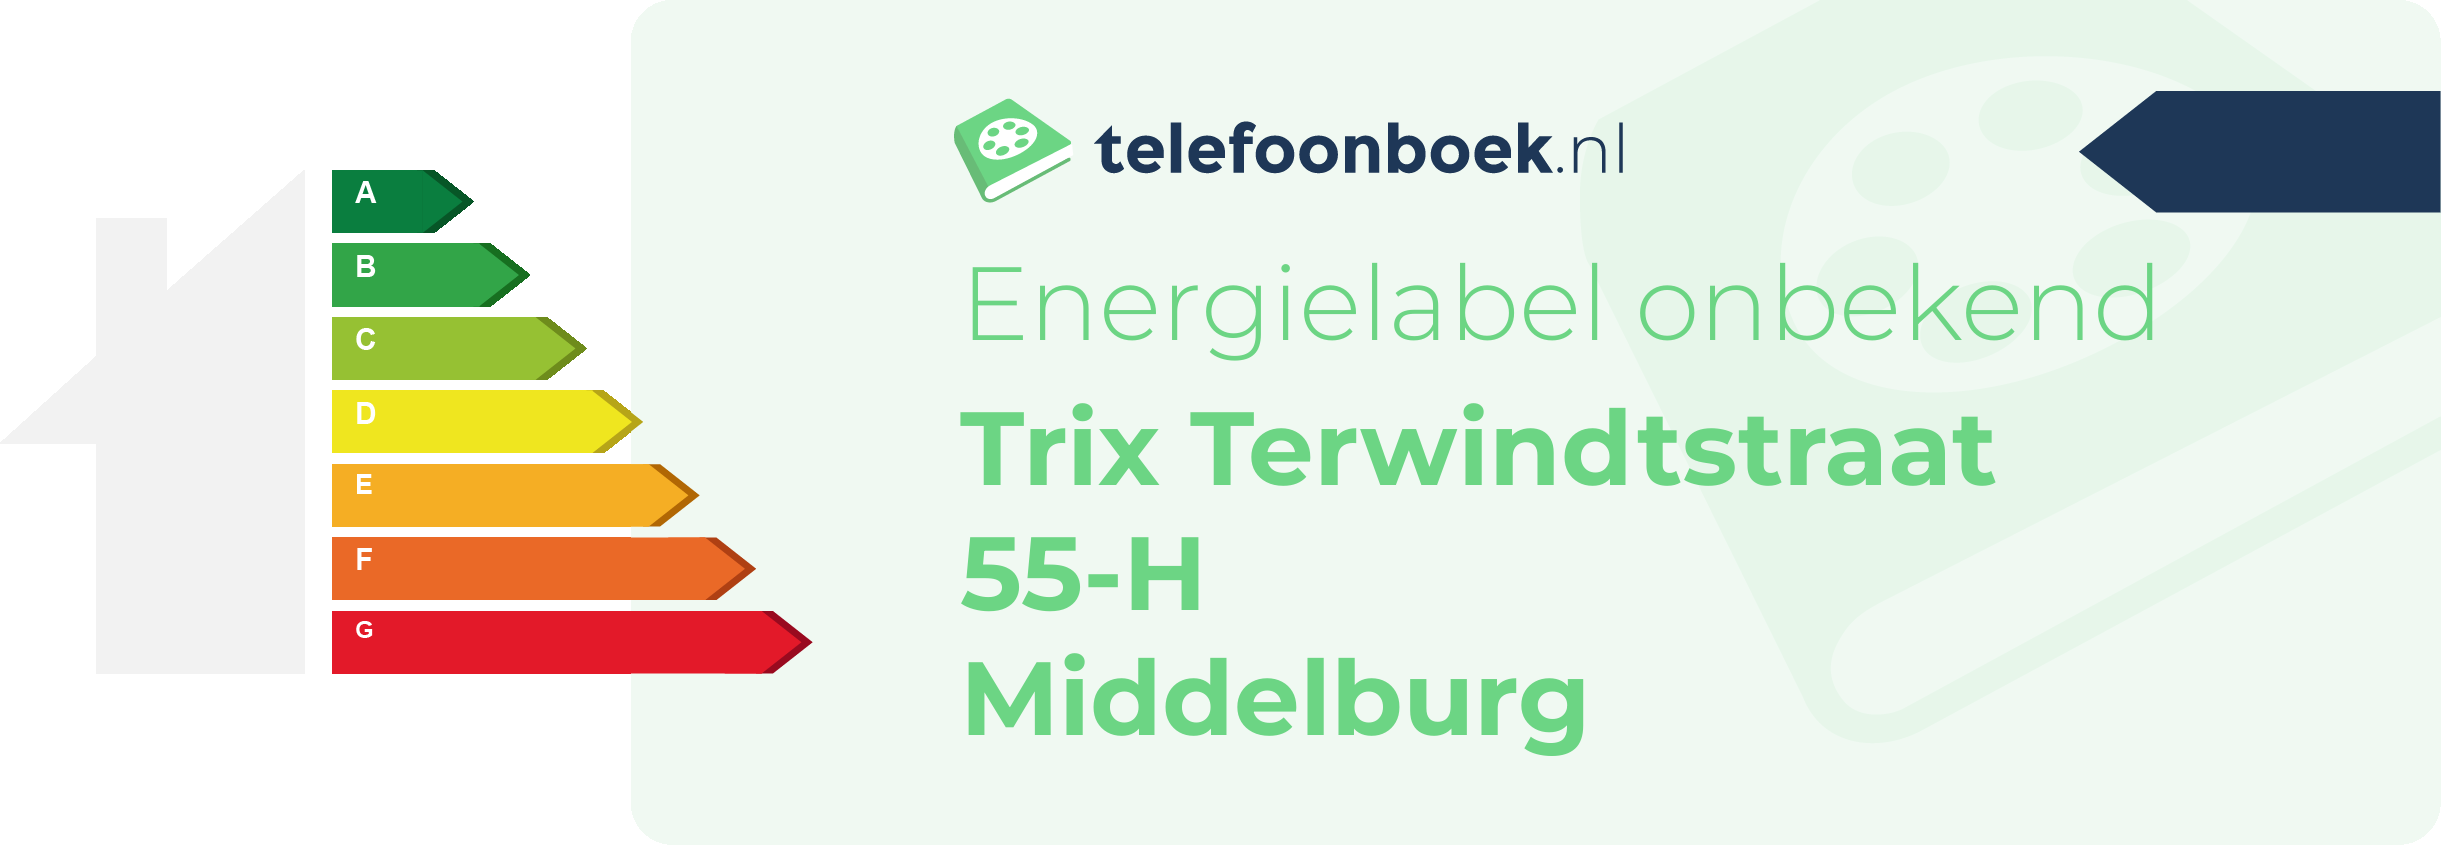 Energielabel Trix Terwindtstraat 55-H Middelburg